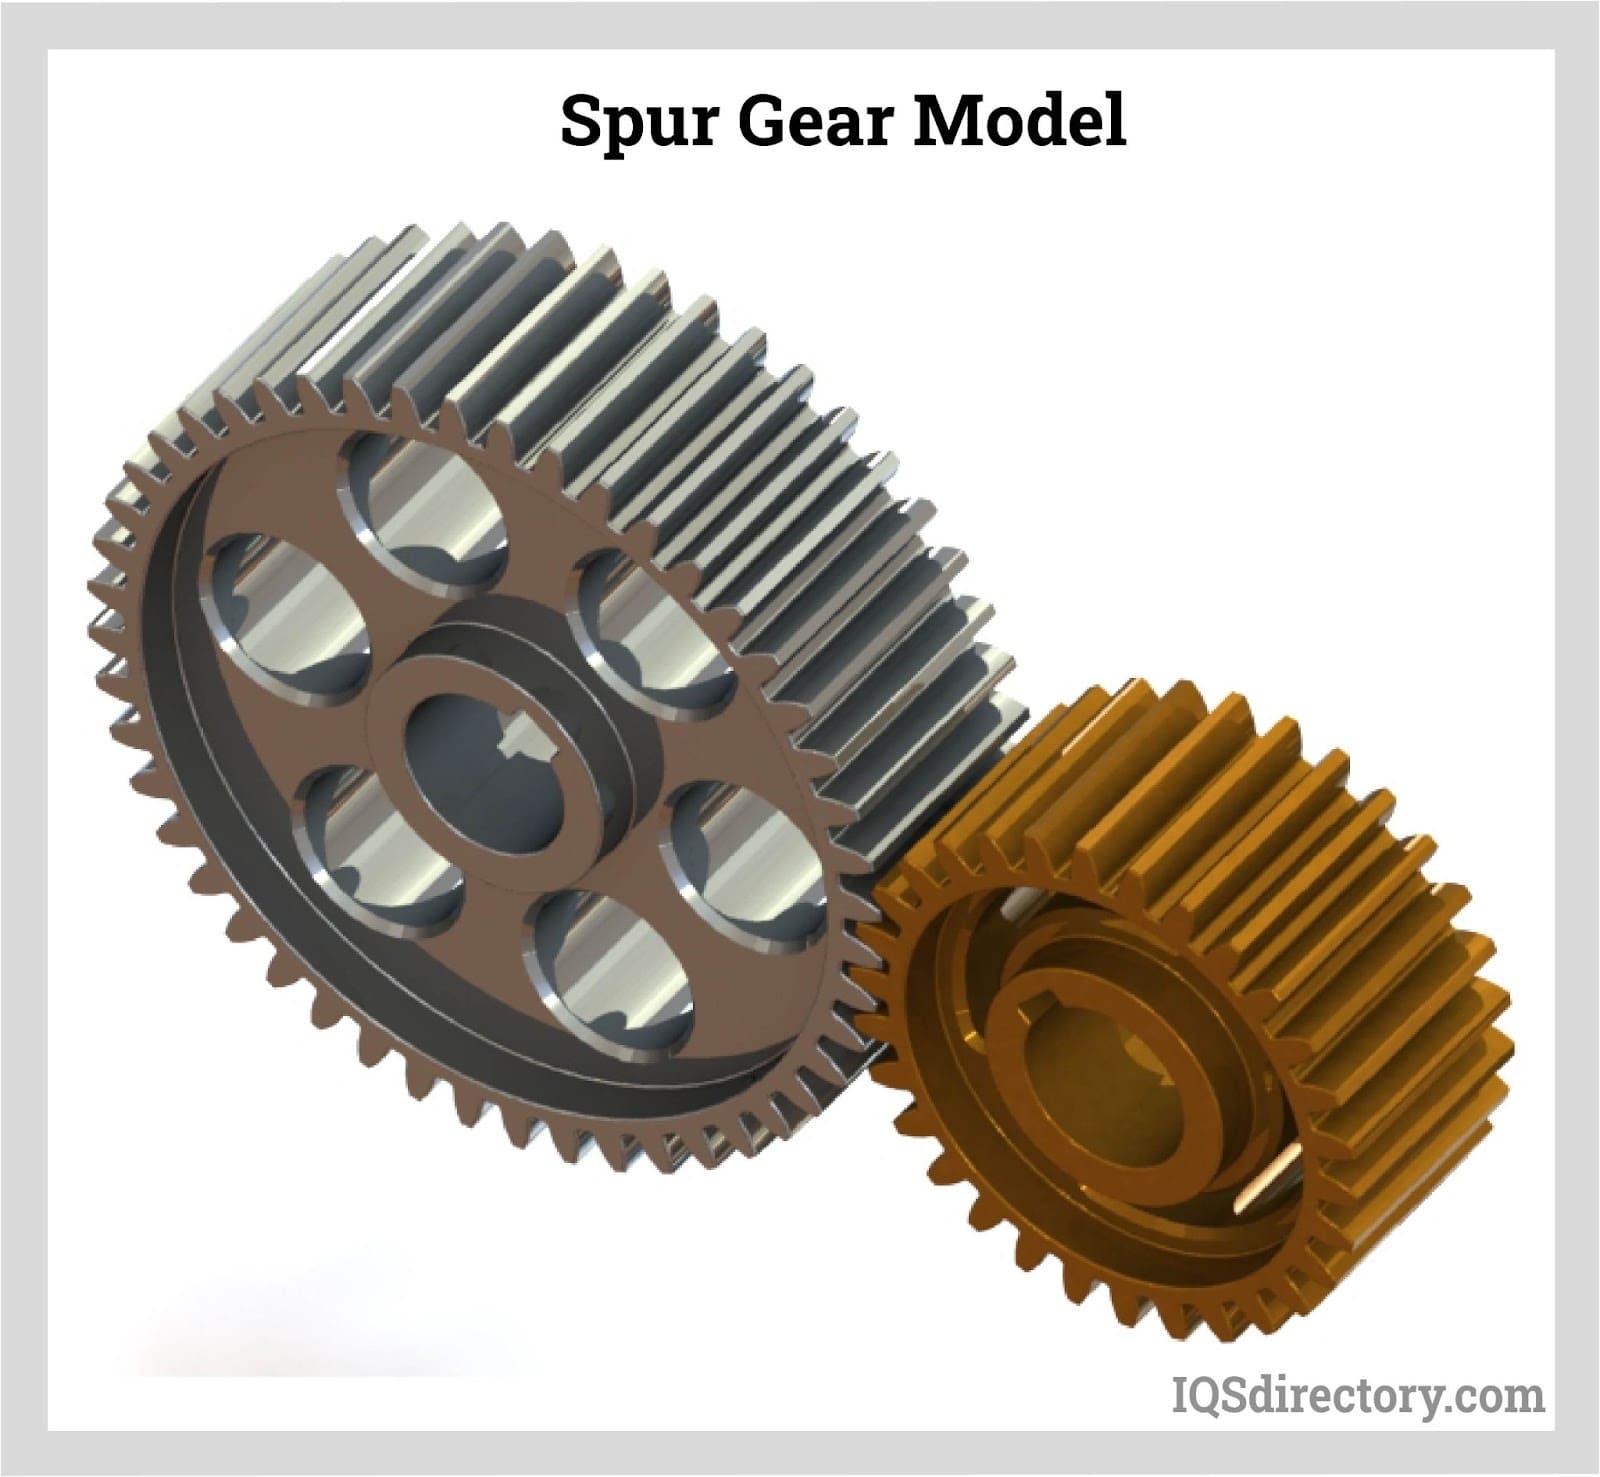 https://www.iqsdirectory.com/articles/gear/spur-gears/spur-gear-model.jpg